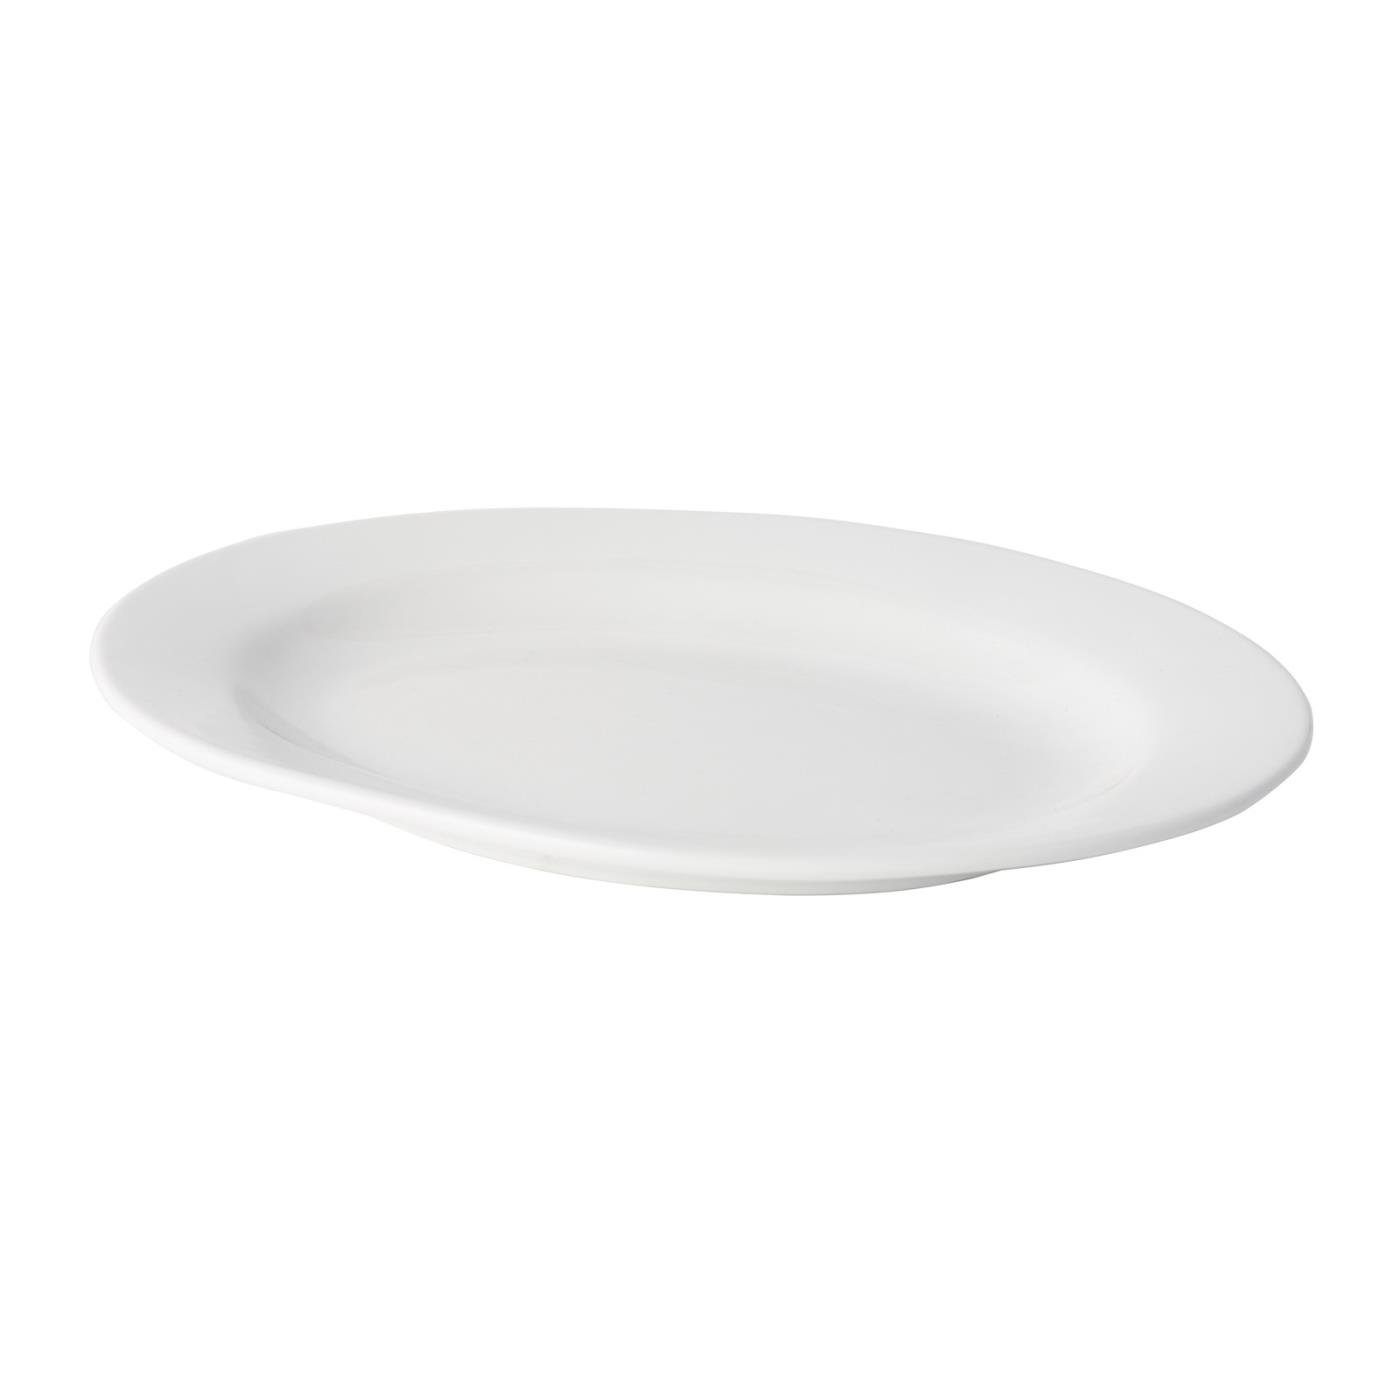 White Ceramic Oval Platter - 16"